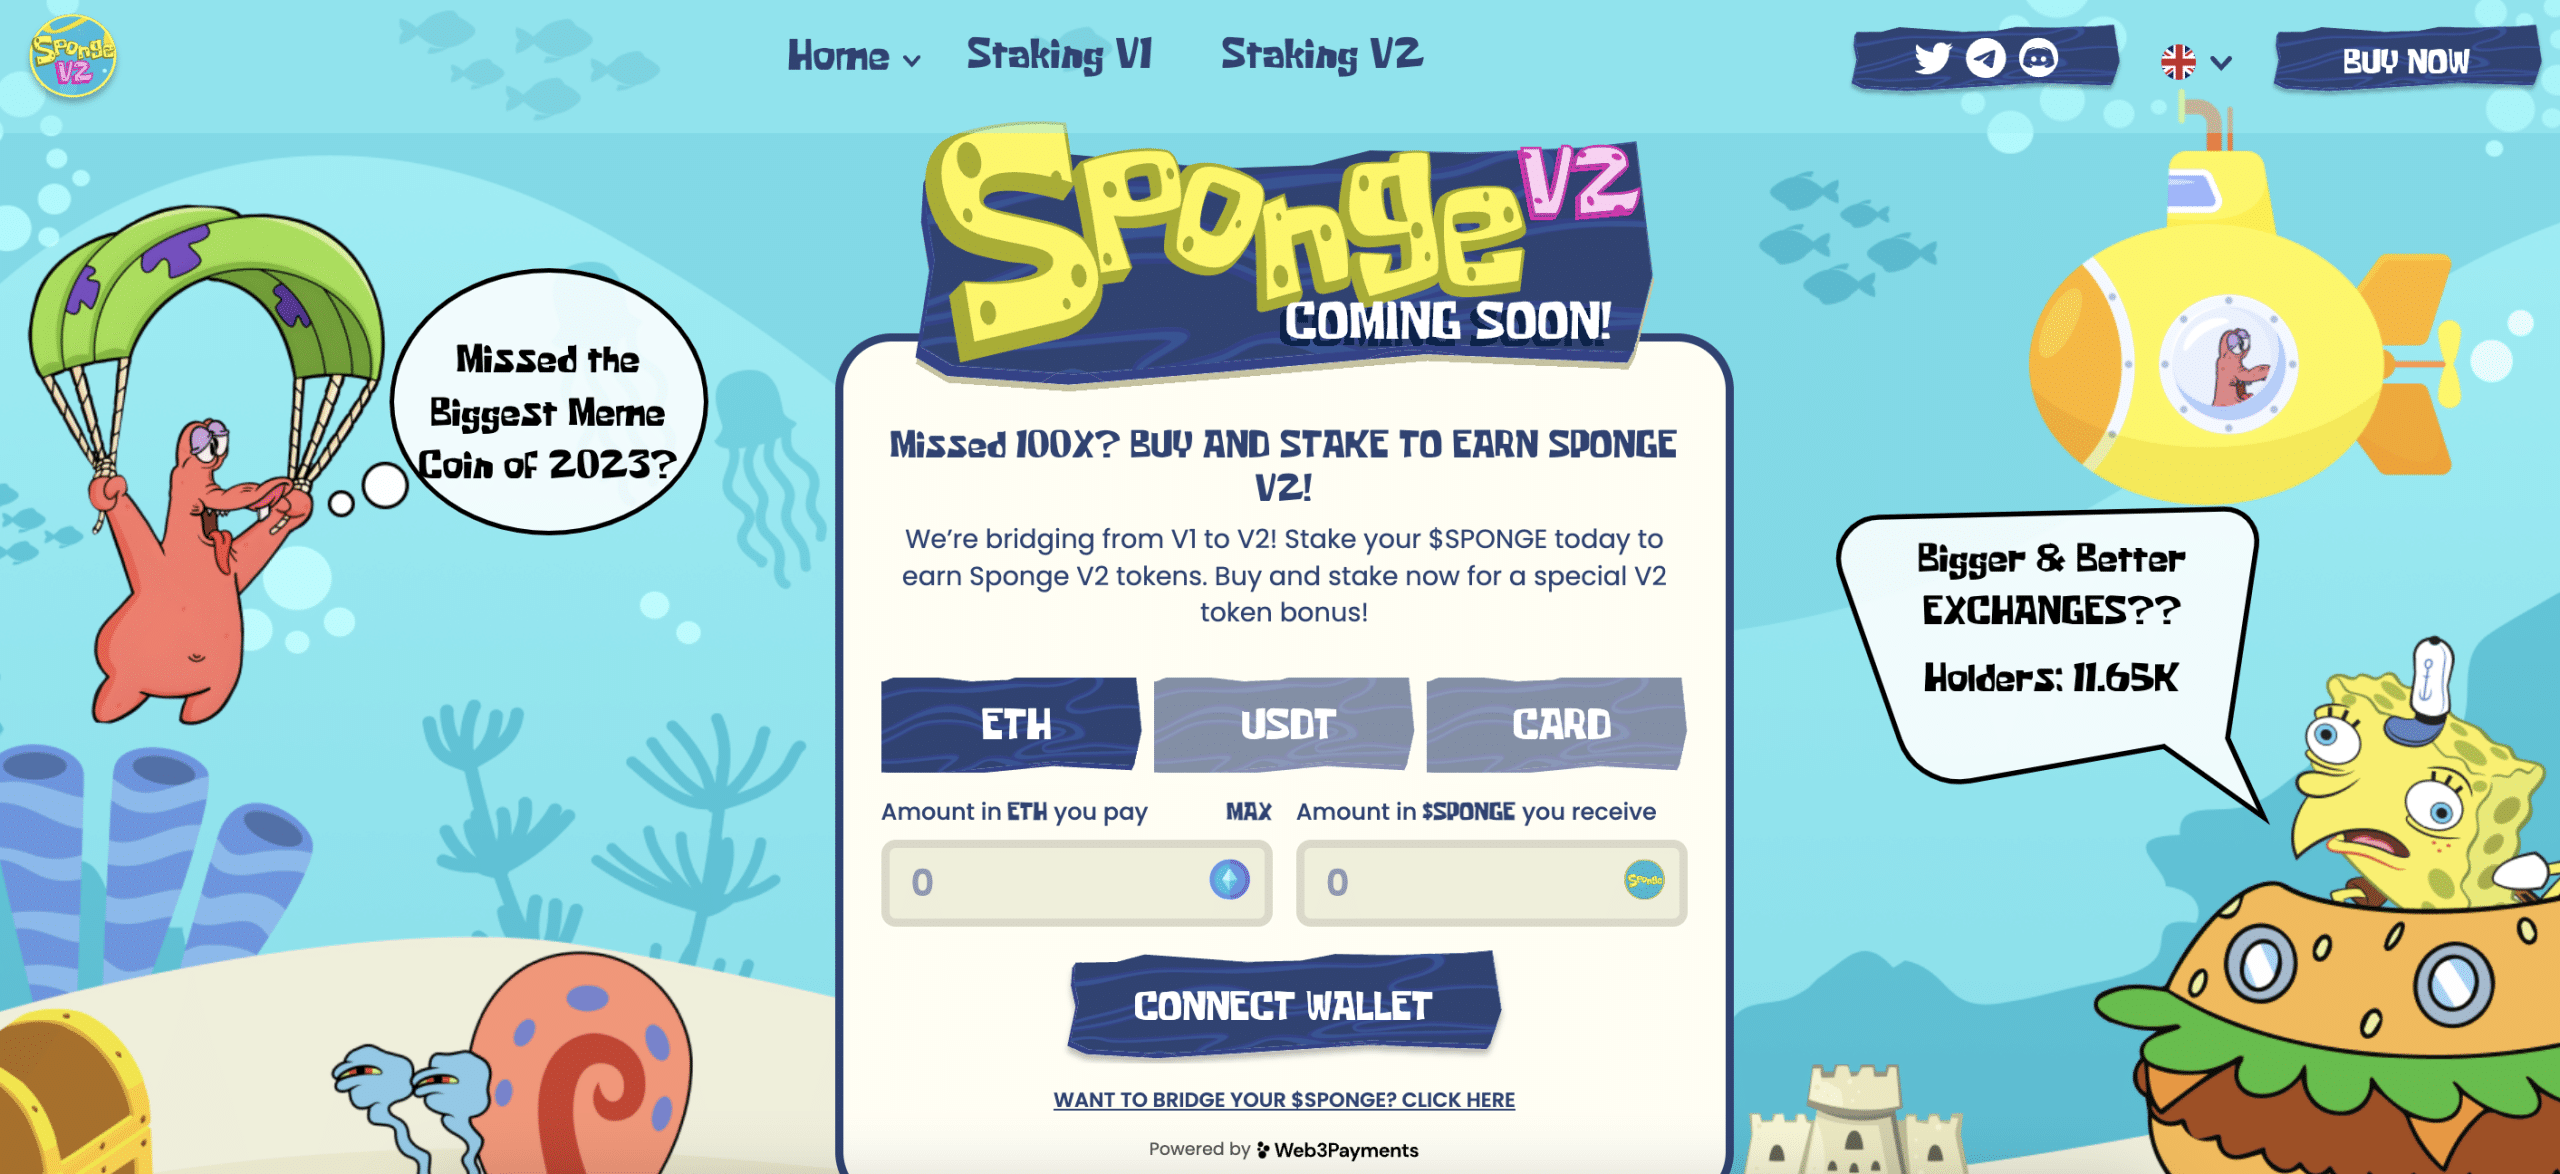 How to buy Sponge V2 tokens